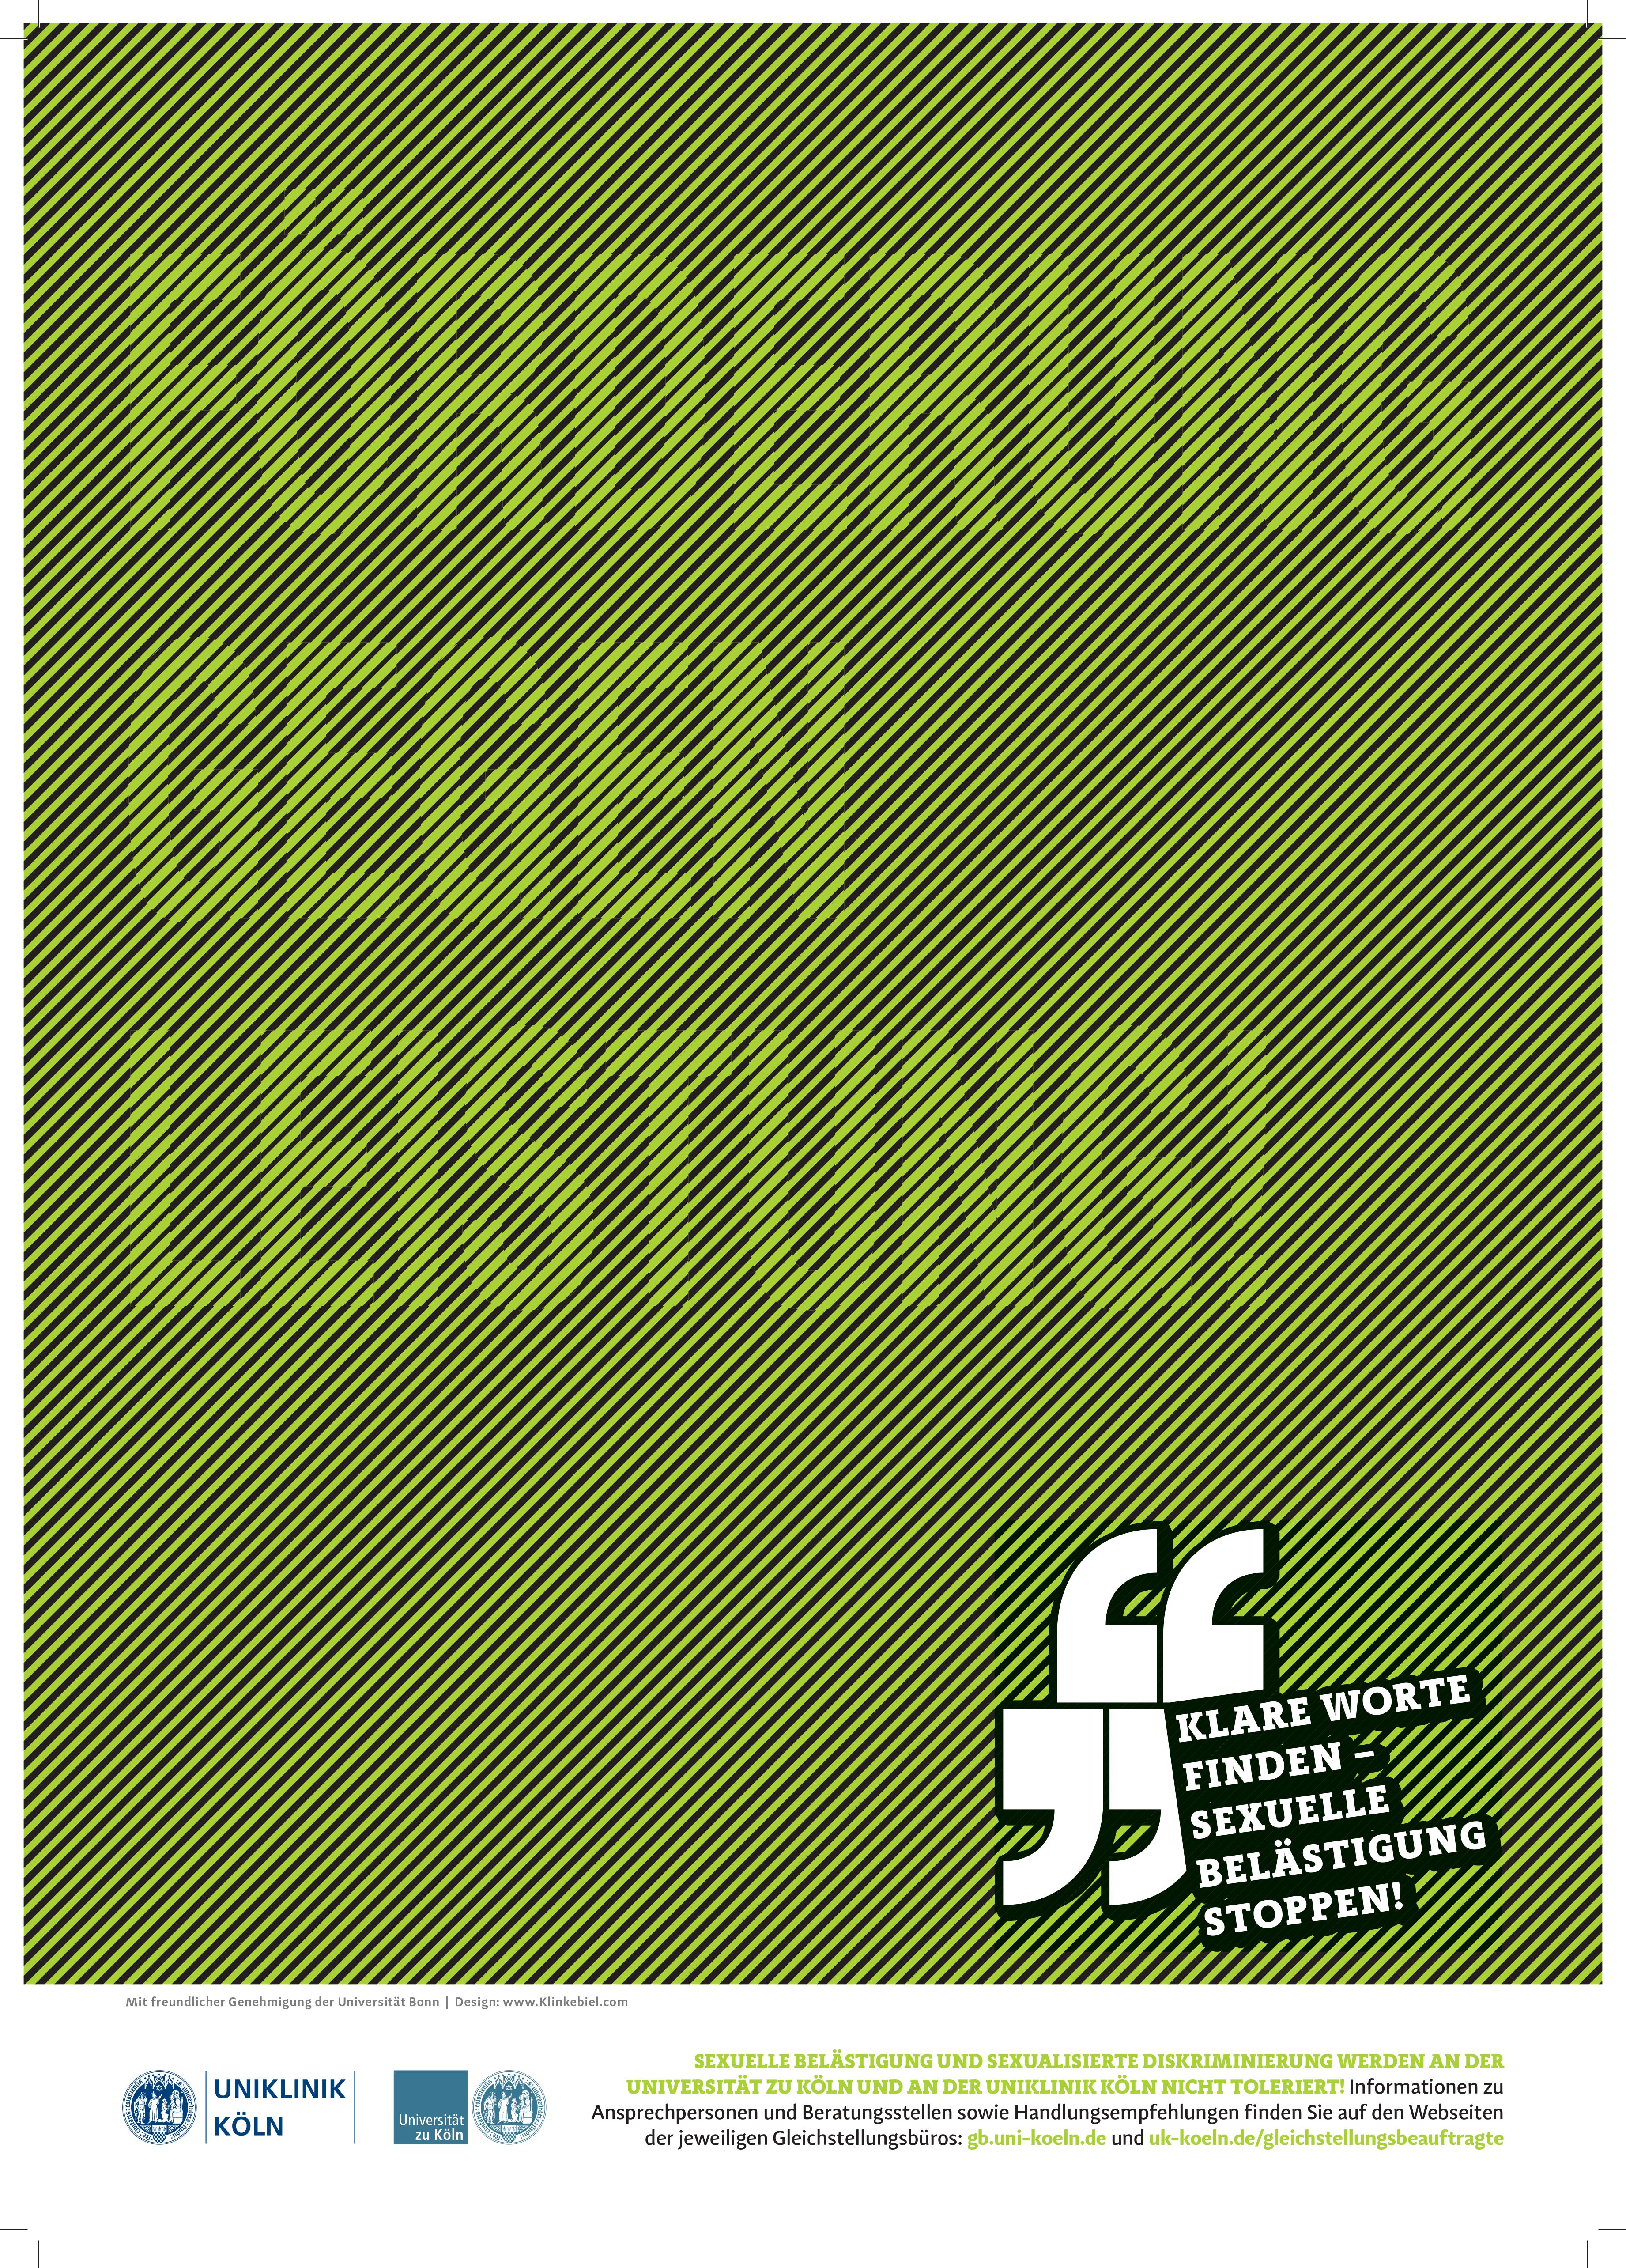 Poster zur Kampagne unboxingdiscrimination in Grün mit schwarzen Diagonalstreifen. Im Plakat steht: Förderung gegen Leistung!